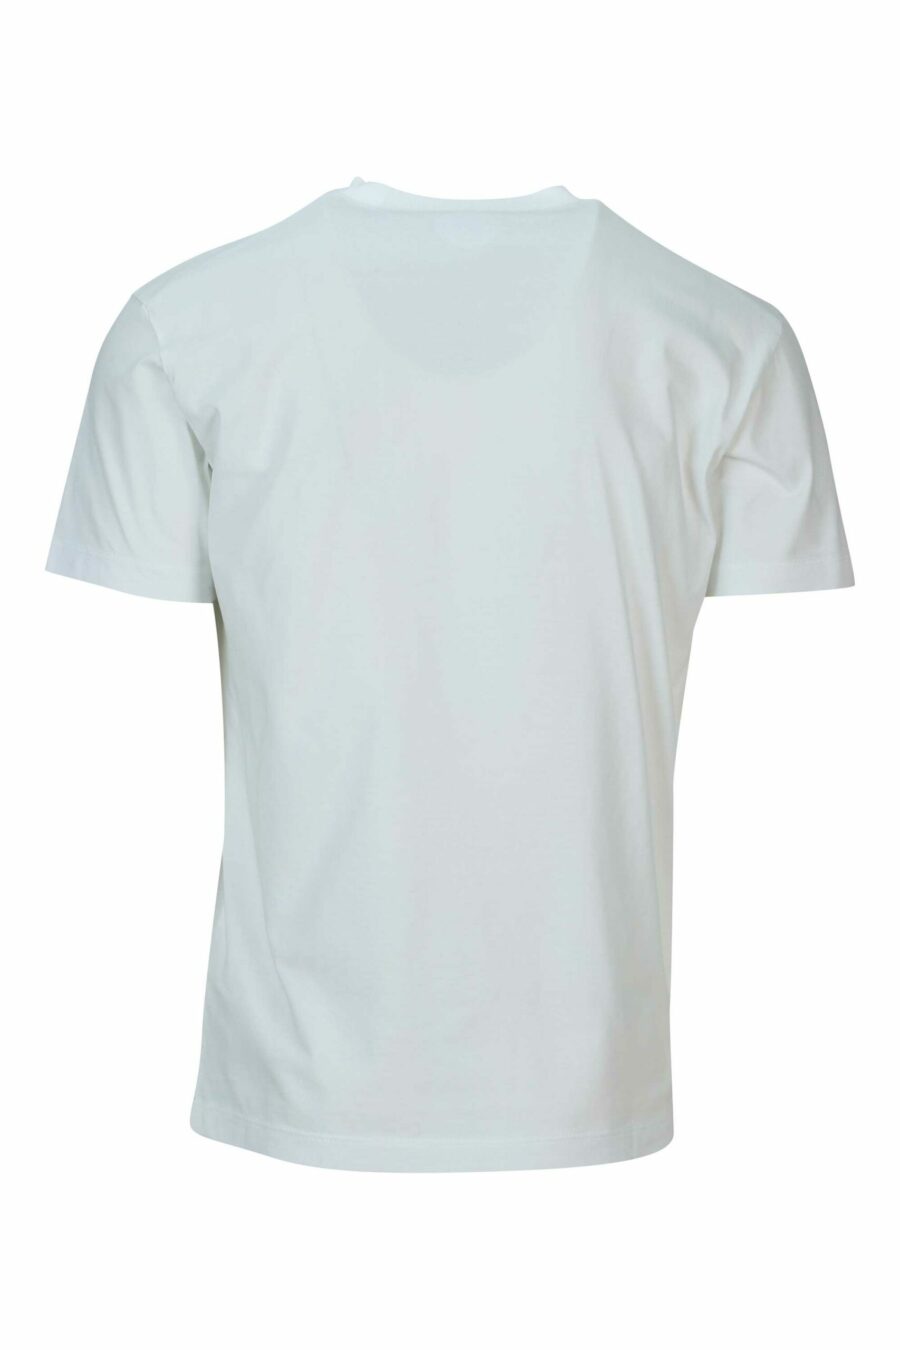 Camiseta blanca con maxilogo "top" - 8054148570866 1 scaled